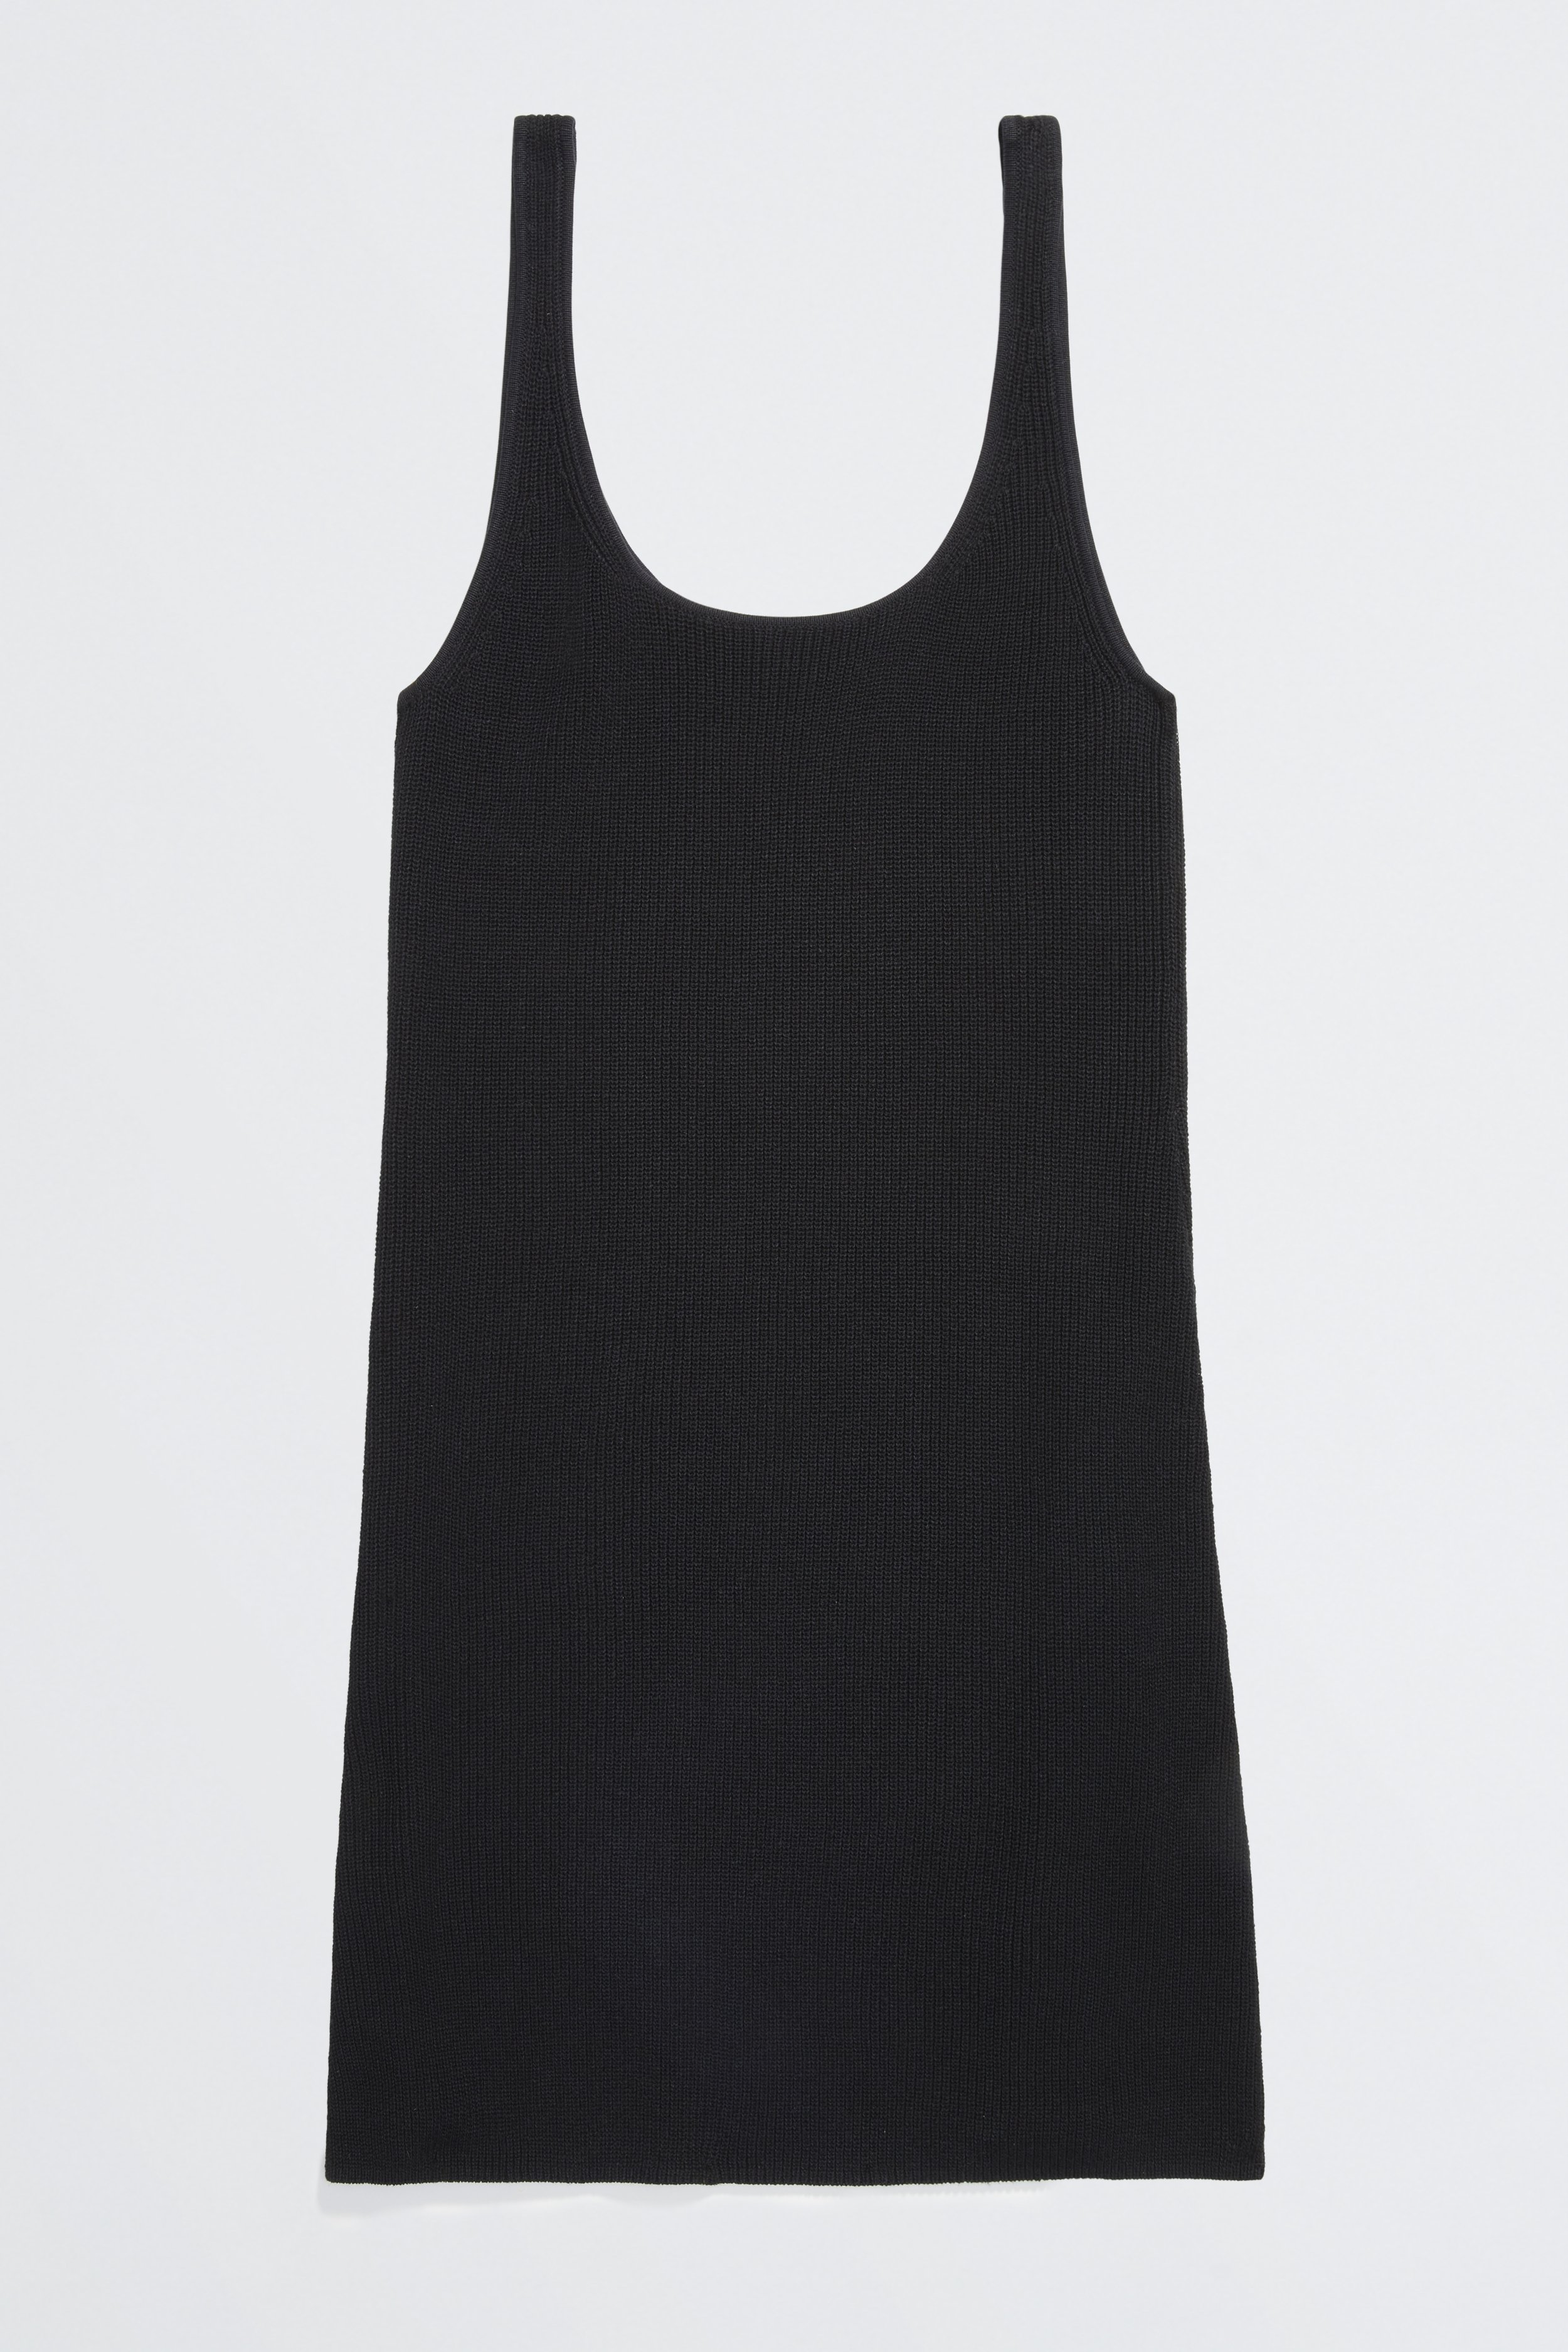 Jennie for Calvin Klein_Paper Yarn Dress_Black Beauty.jpg